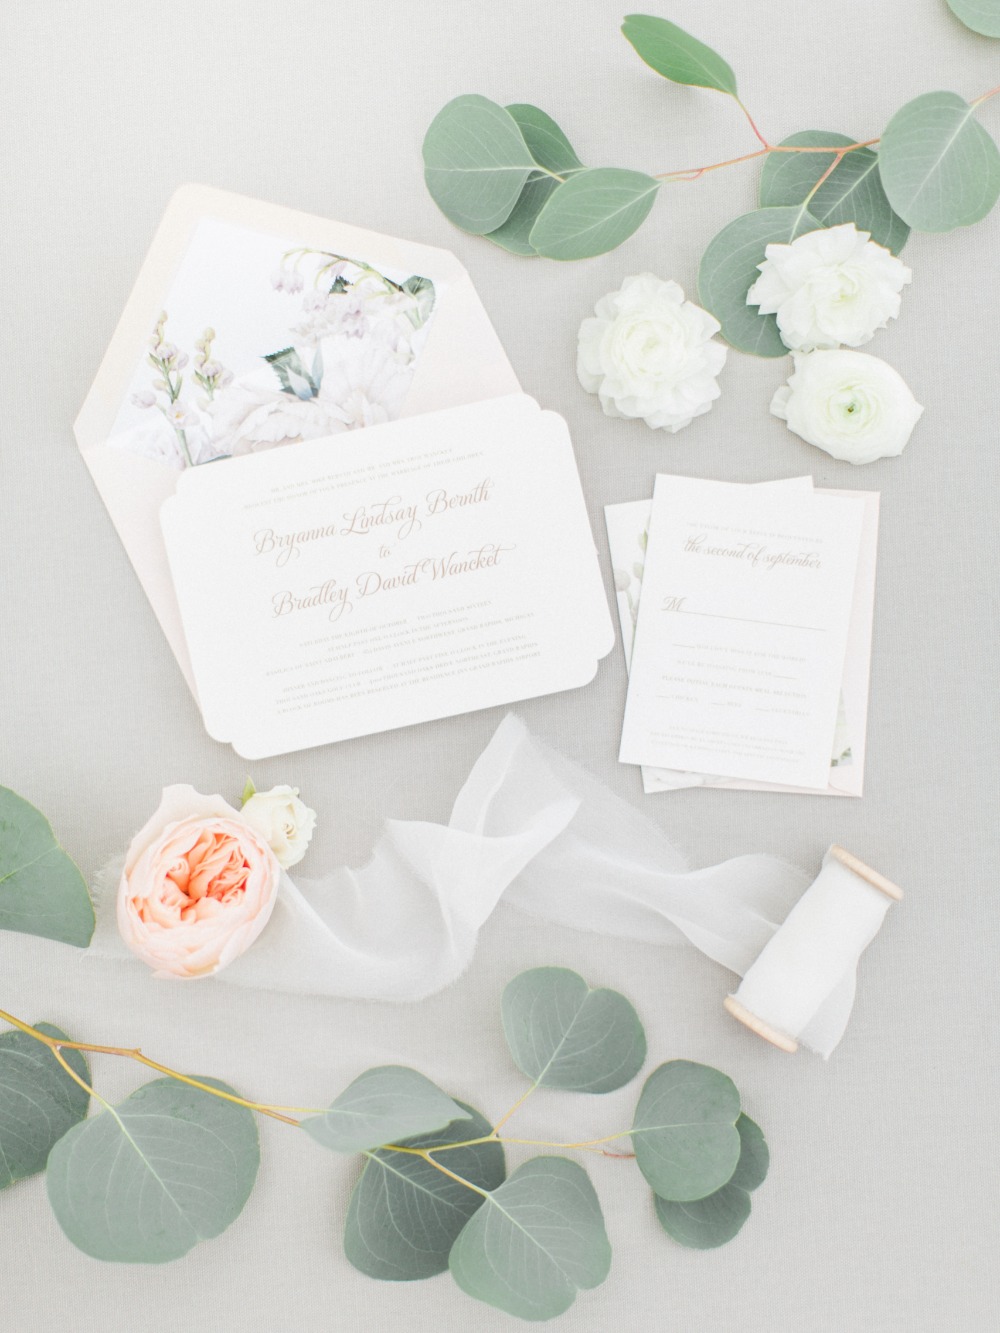 Elegant wedding invitation suite